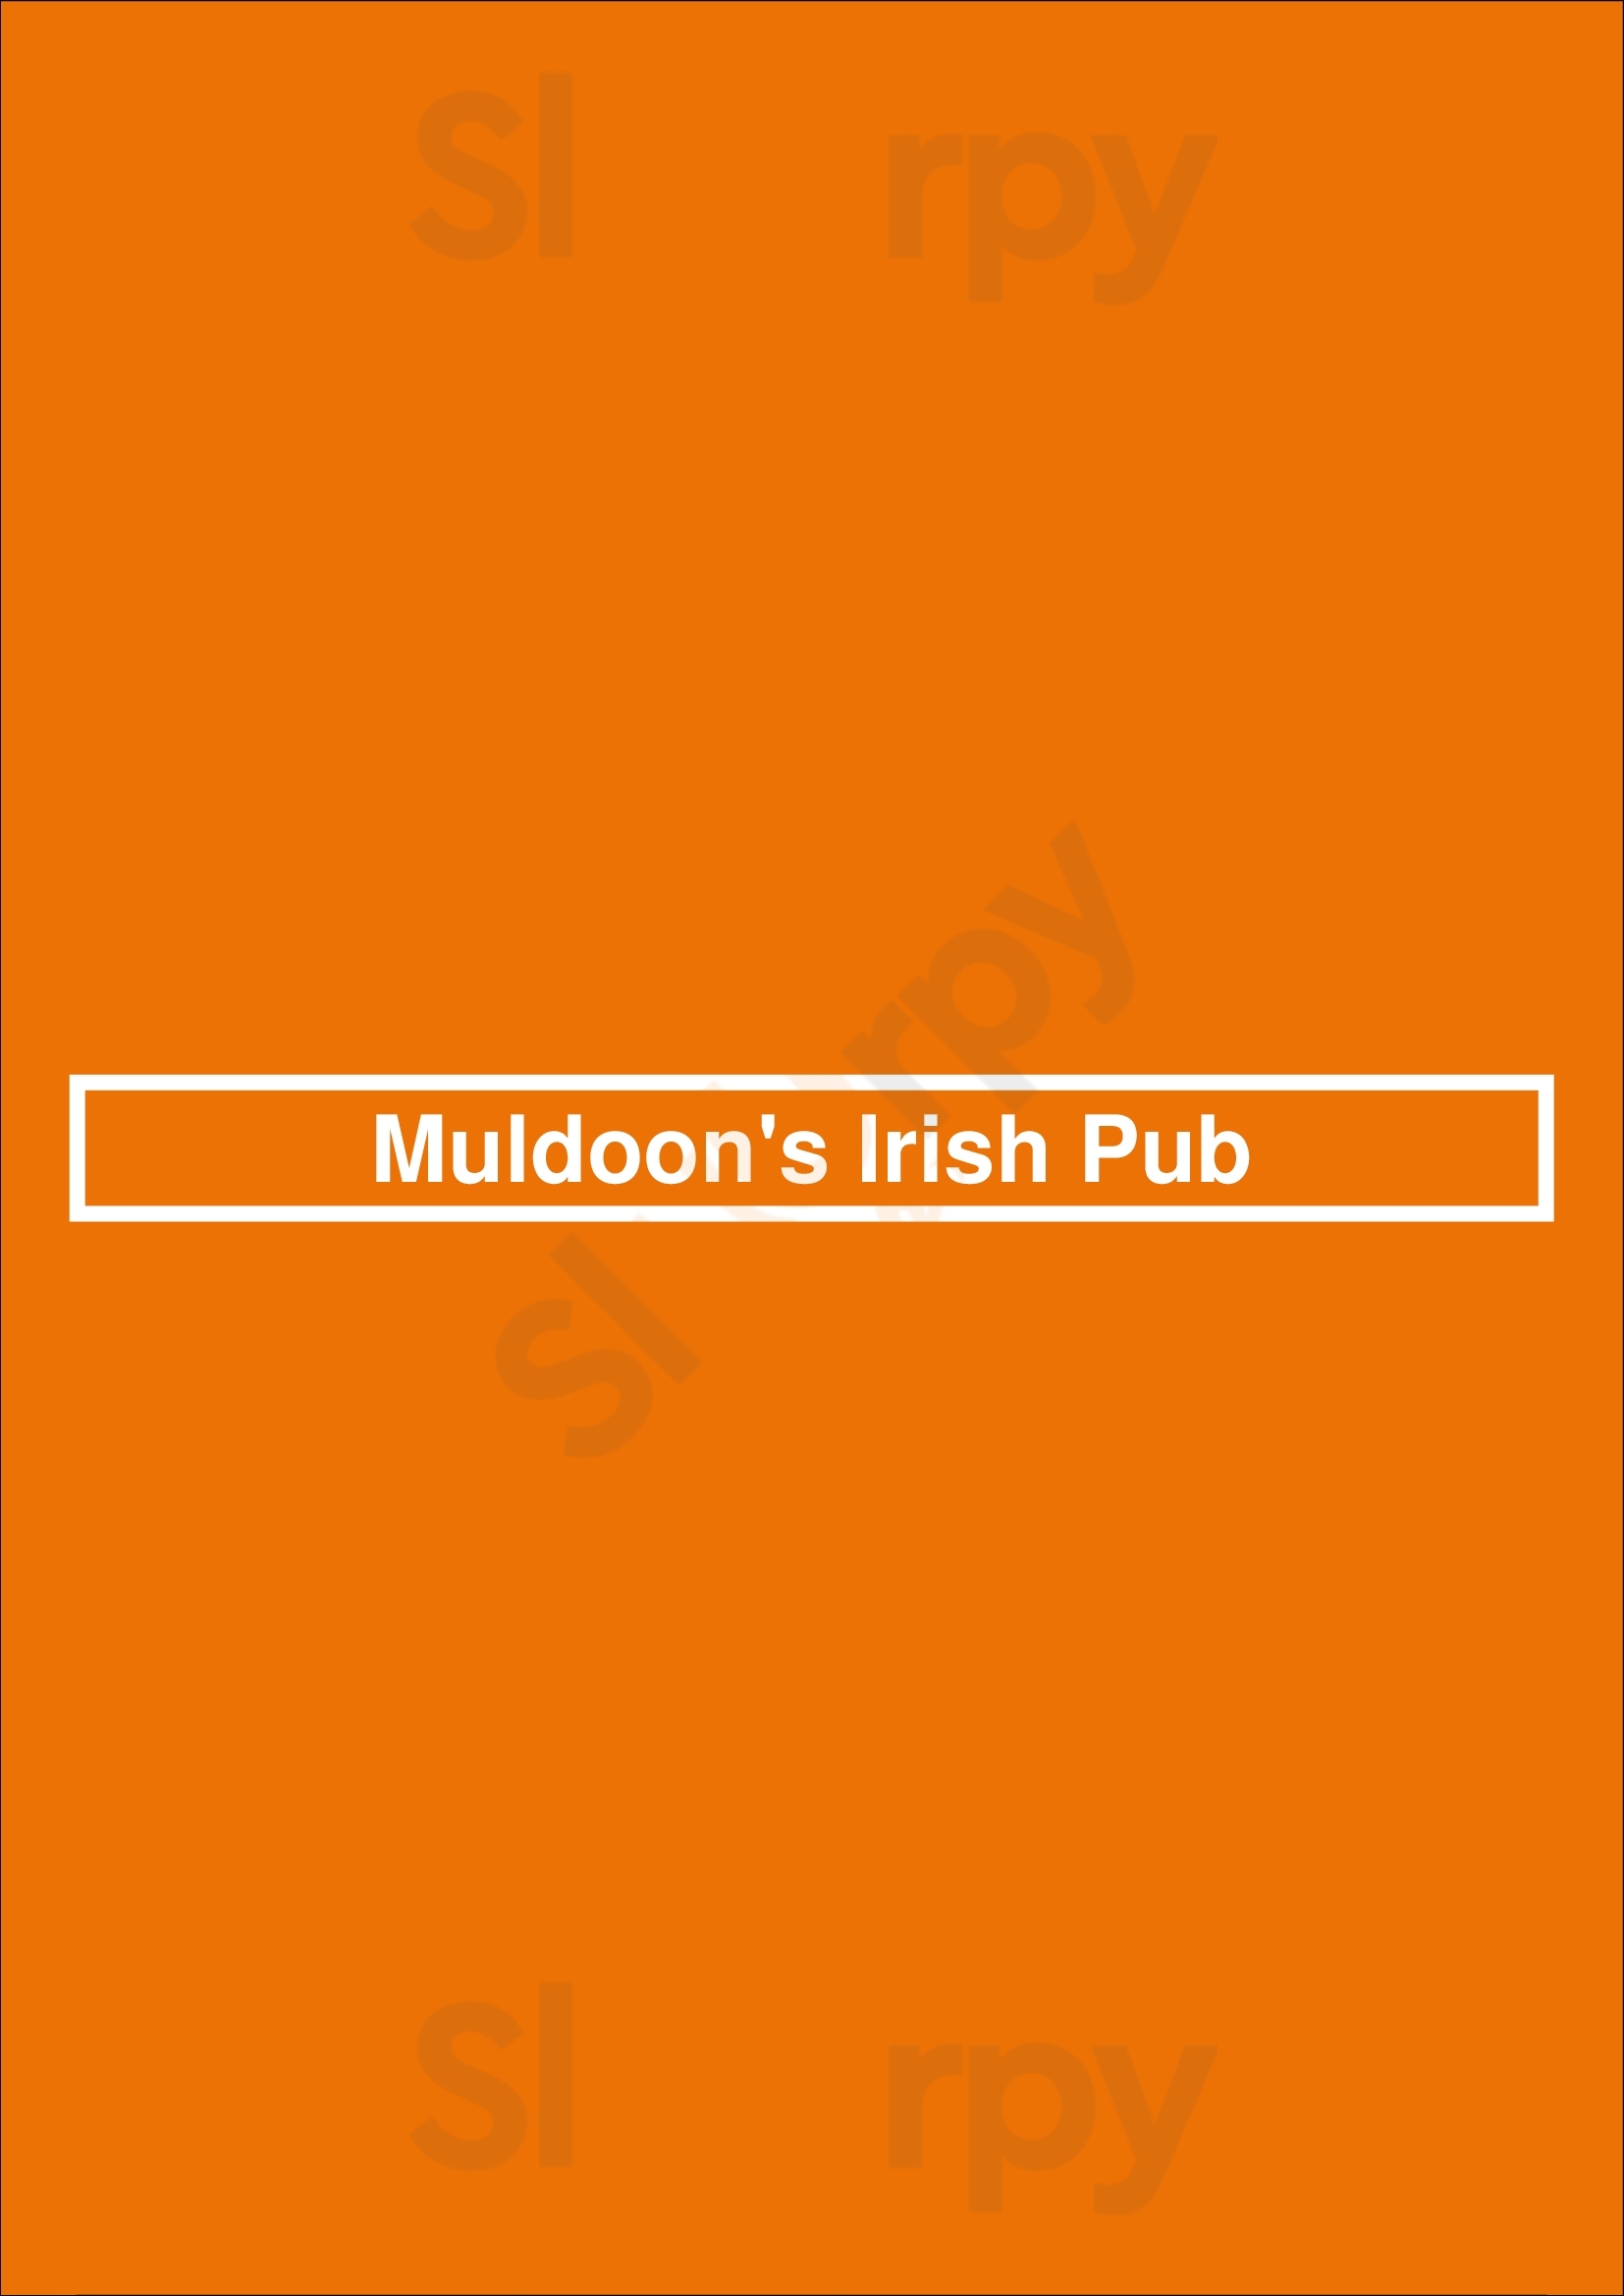 Muldoon's Irish Pub Newport Beach Menu - 1